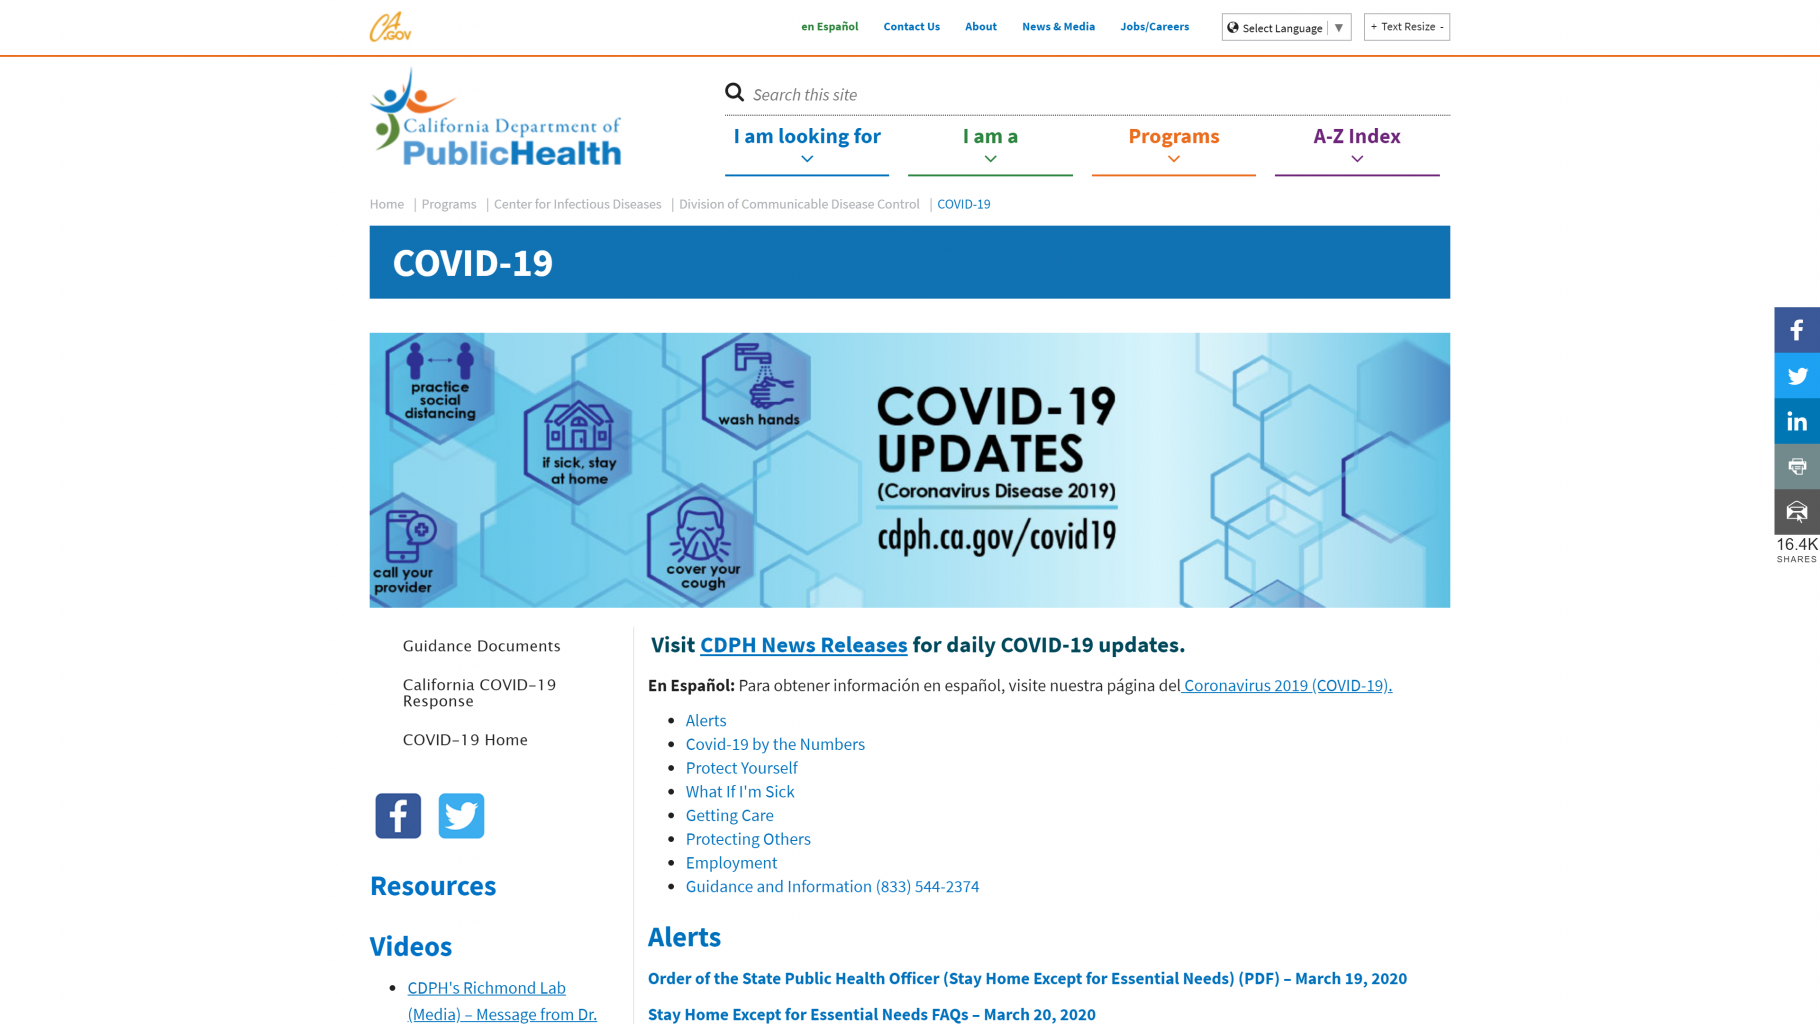 California Department of Public Health website